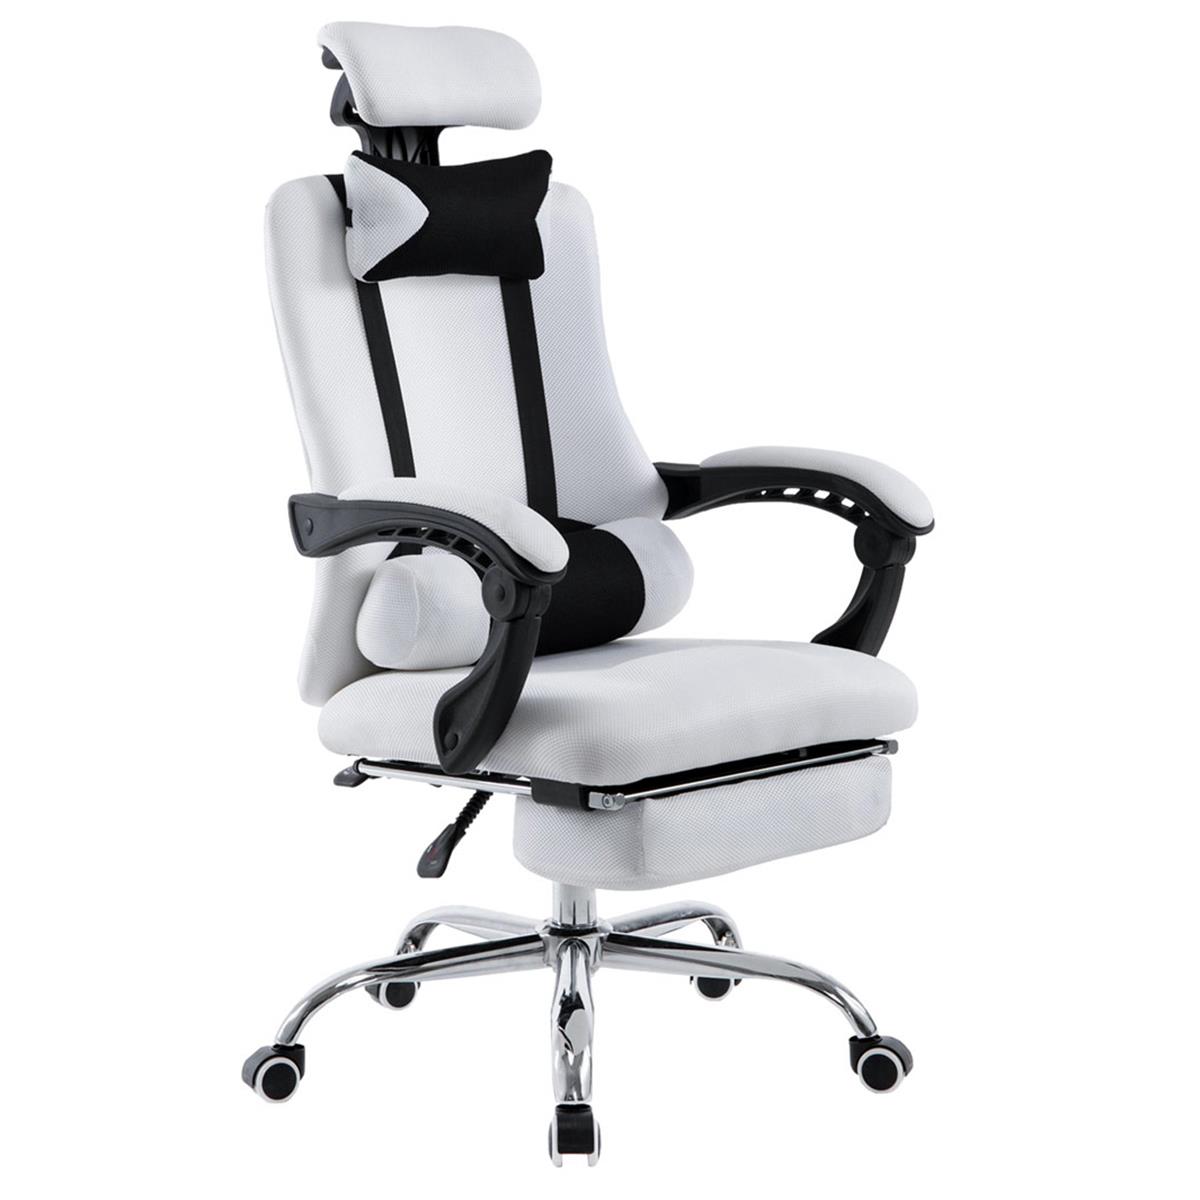 Gaming-Stuhl ANTARES, ausziehbare Fußablage, atmungsaktiver Netzbezug, Farbe Weiß